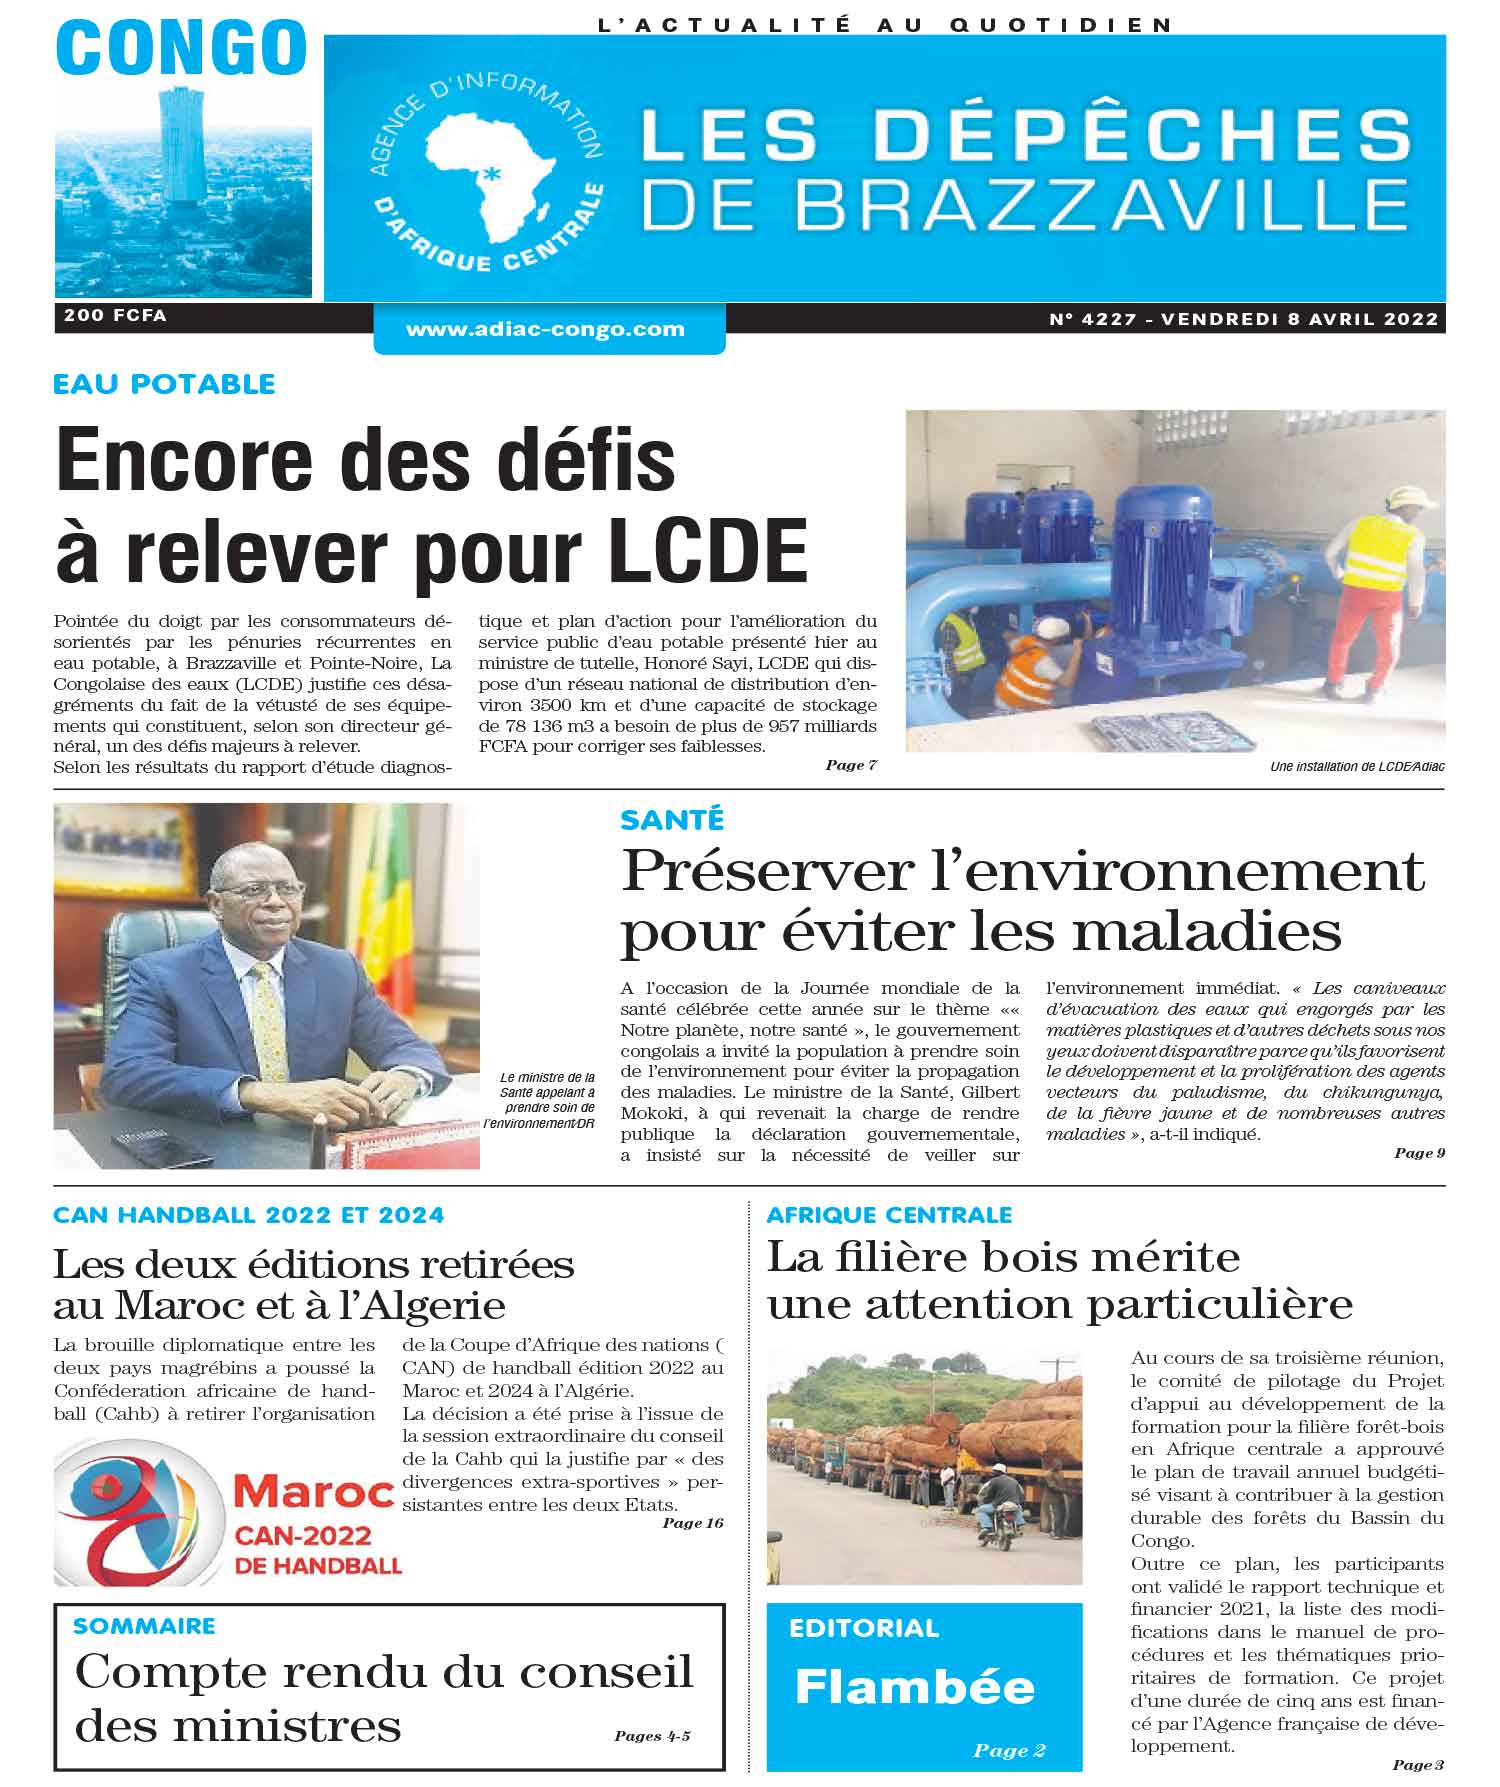 Cover Les Dépêches de Brazzaville - 4227 